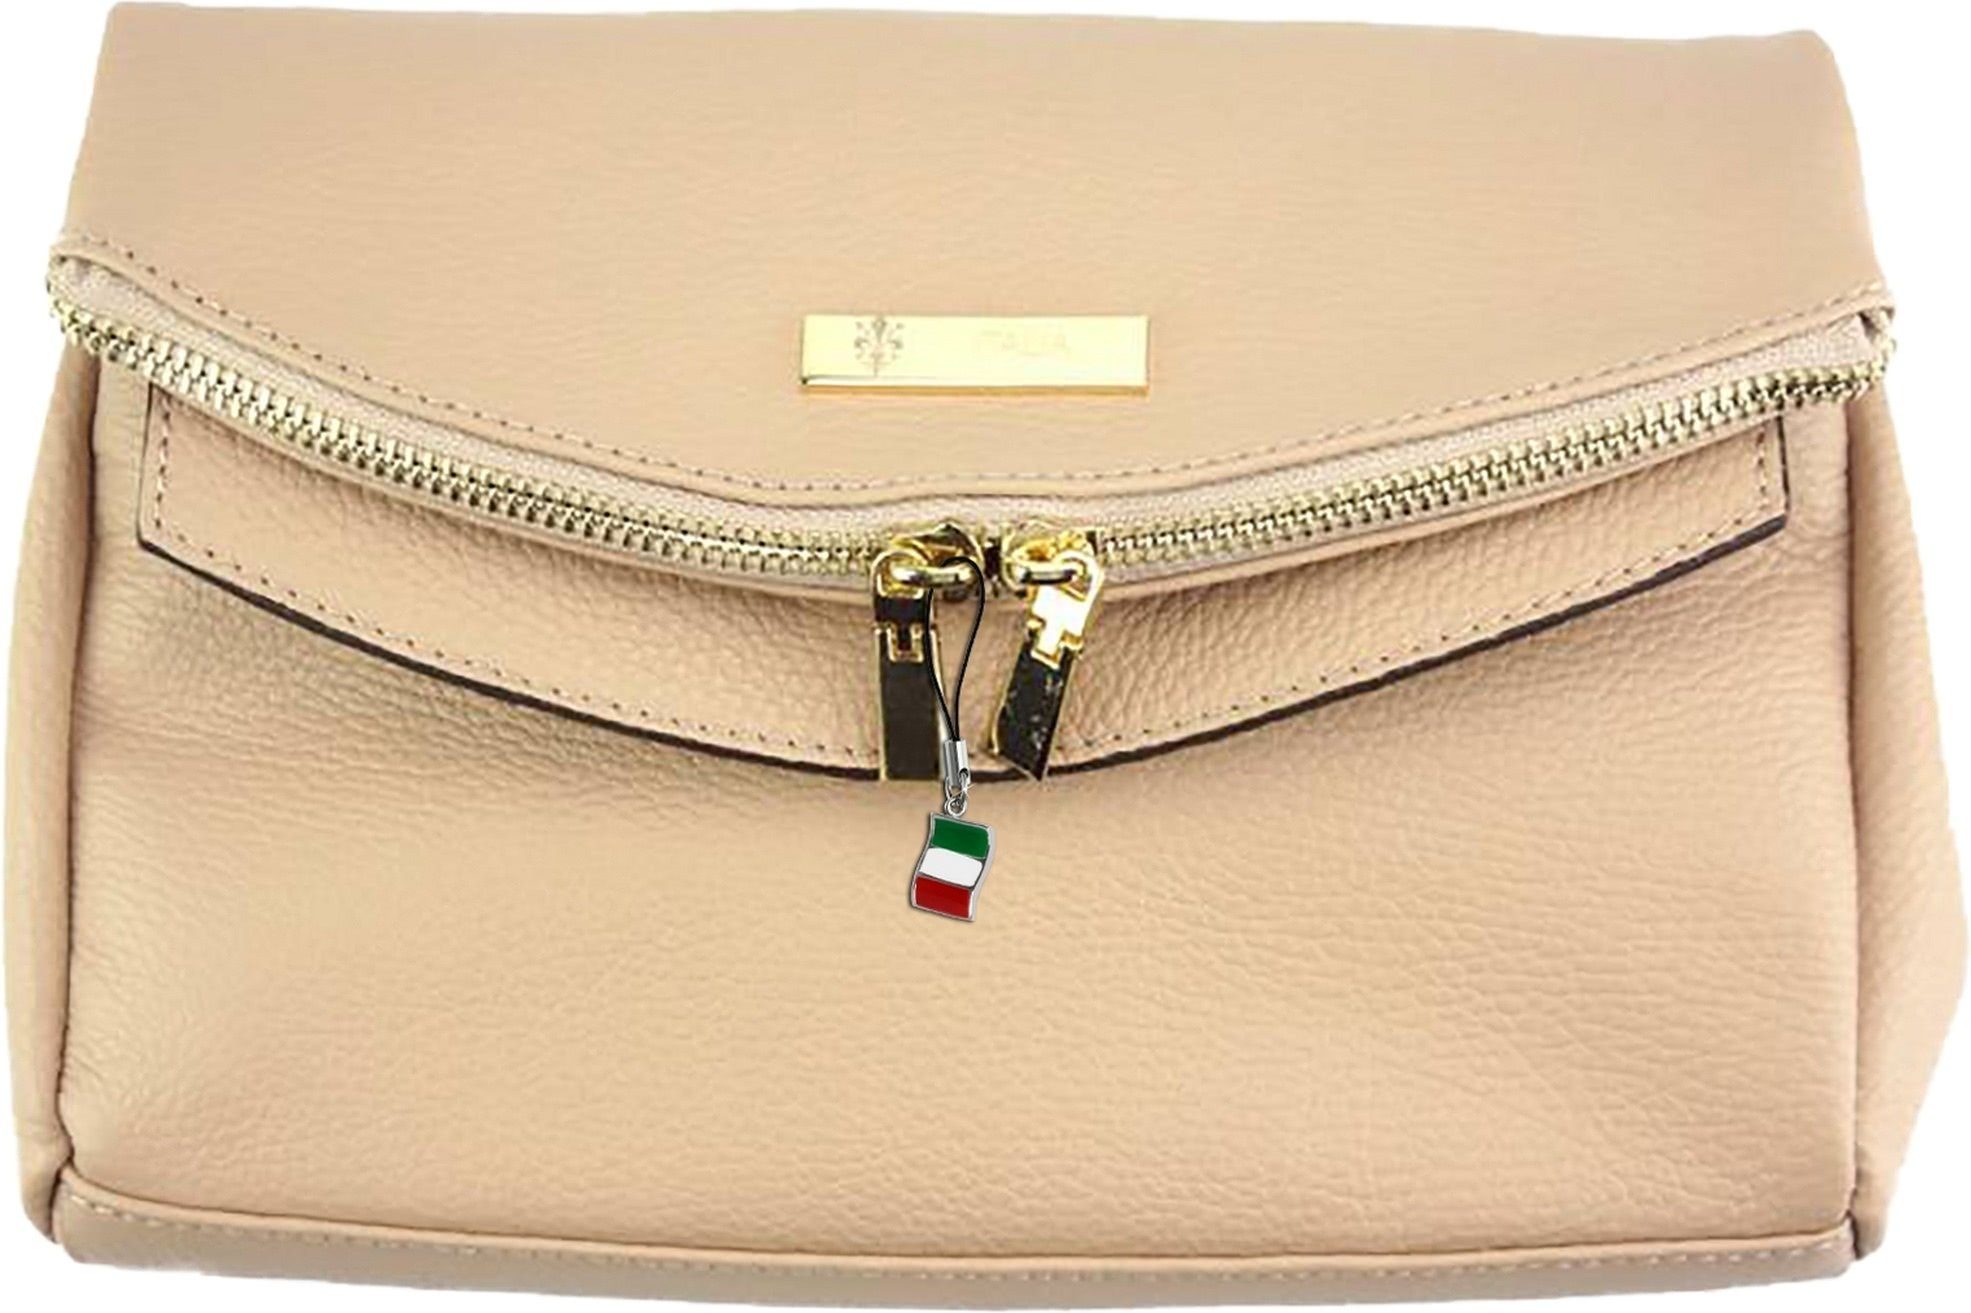 FLORENCE Clutch »Florence 2in1 Damen Abendtasche«, Damen Tasche aus  Echtleder in rosa, ca. 24cm Breite, Made-In Italy online kaufen | OTTO